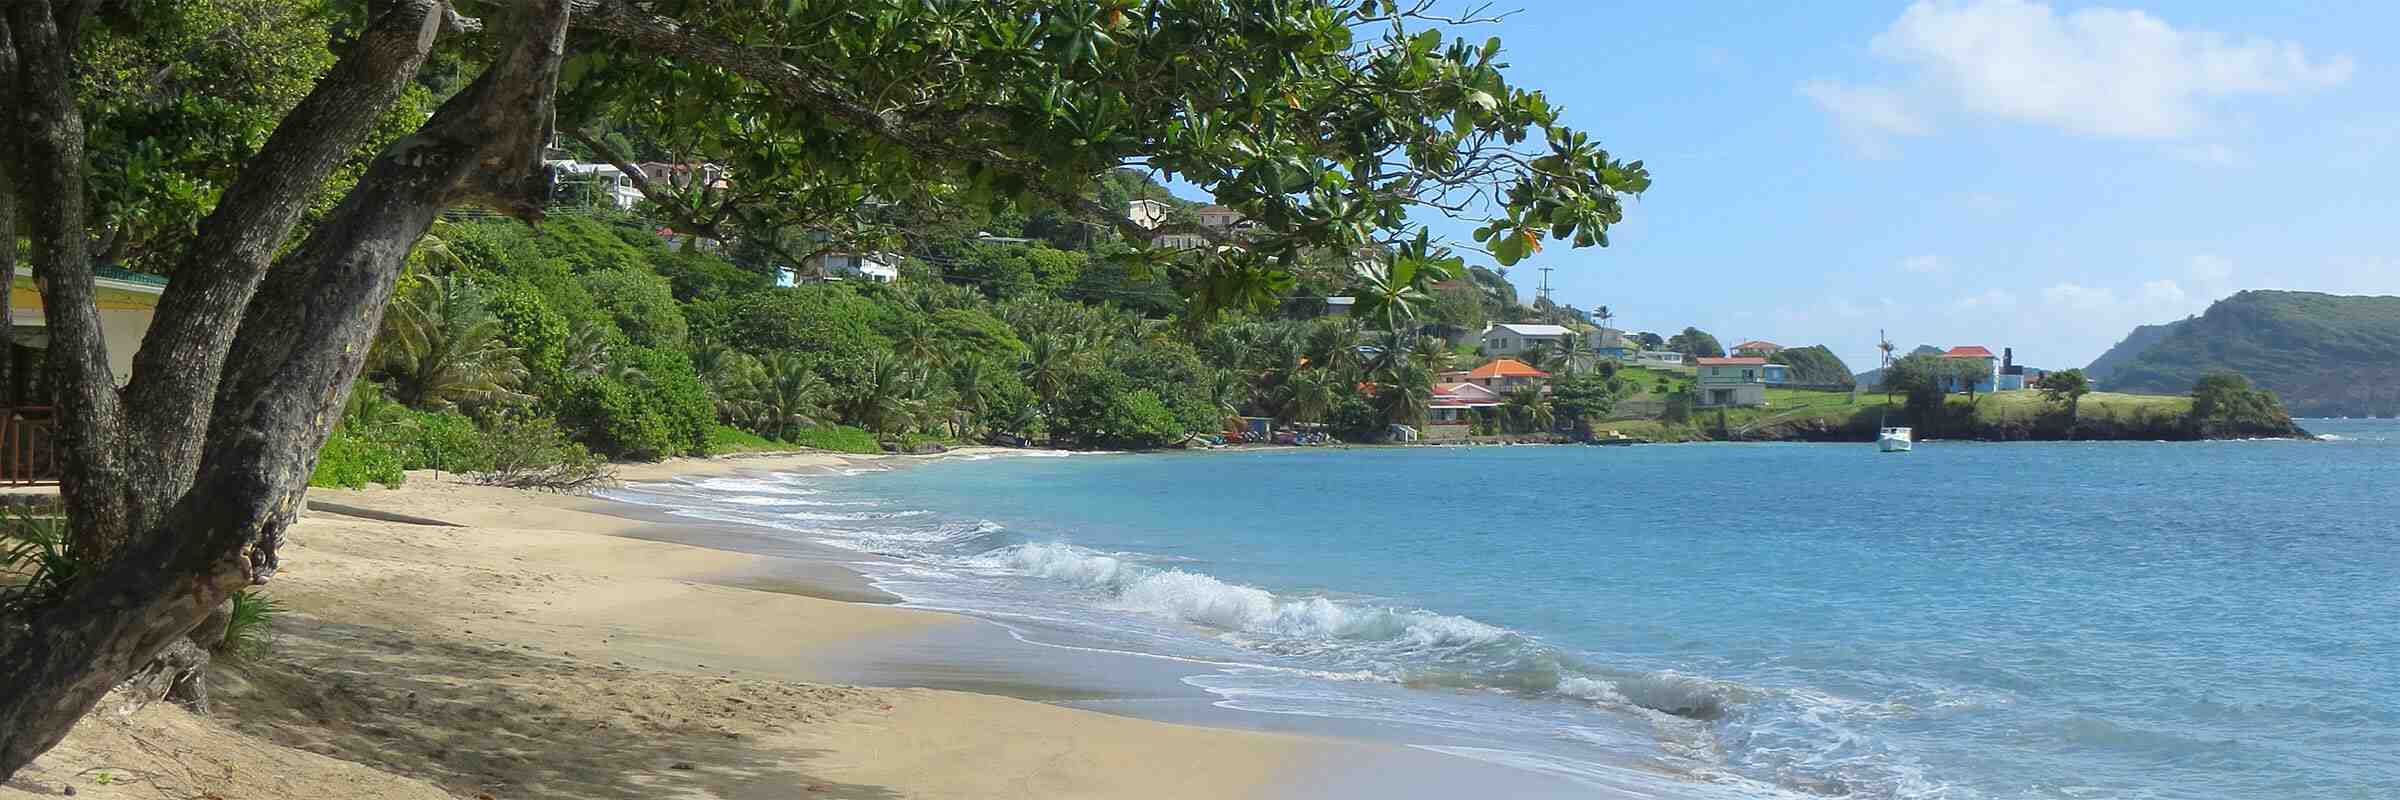 Какой самый красивый остров Гваделупа или Мартиника?